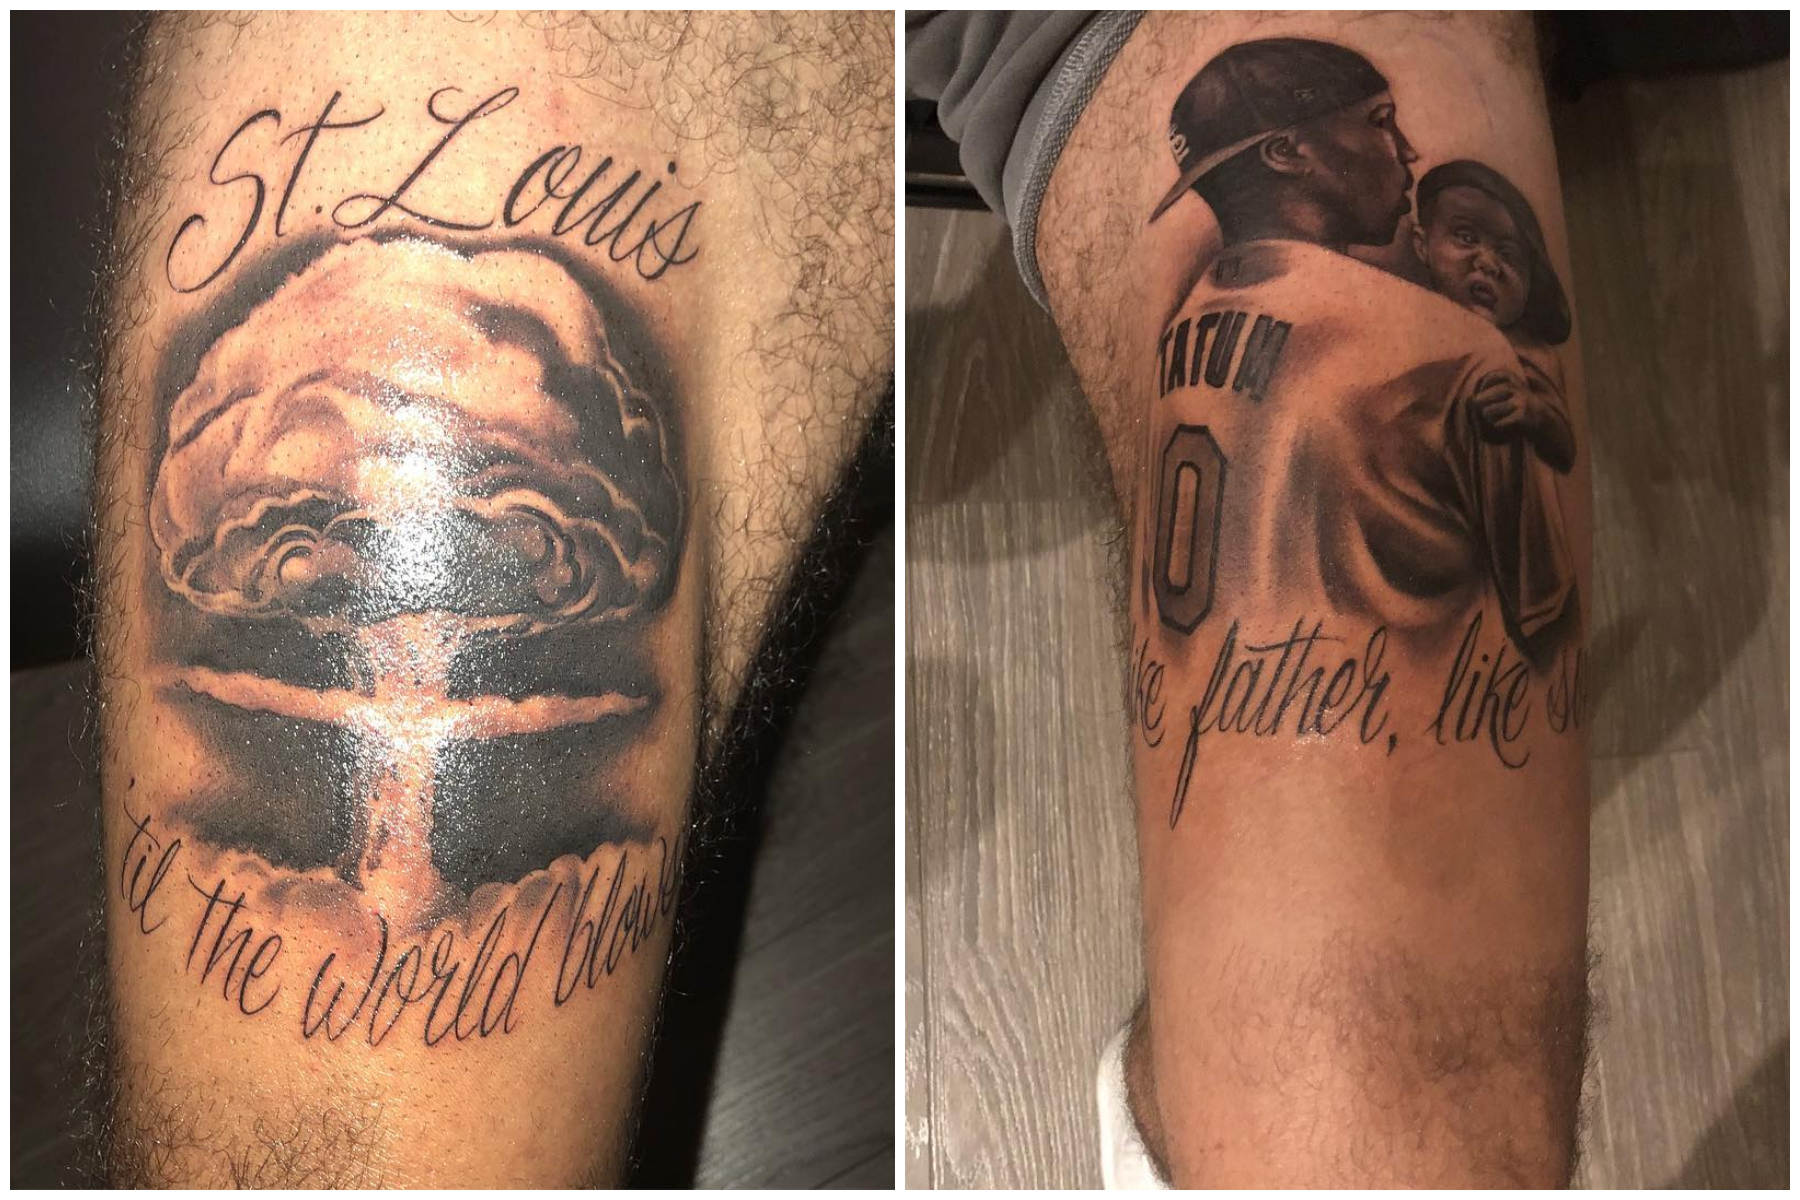  Tatum has THE bsst back piece in the NBA jaysontatum inkednba n   jordan clarkson back tattoo  TikTok